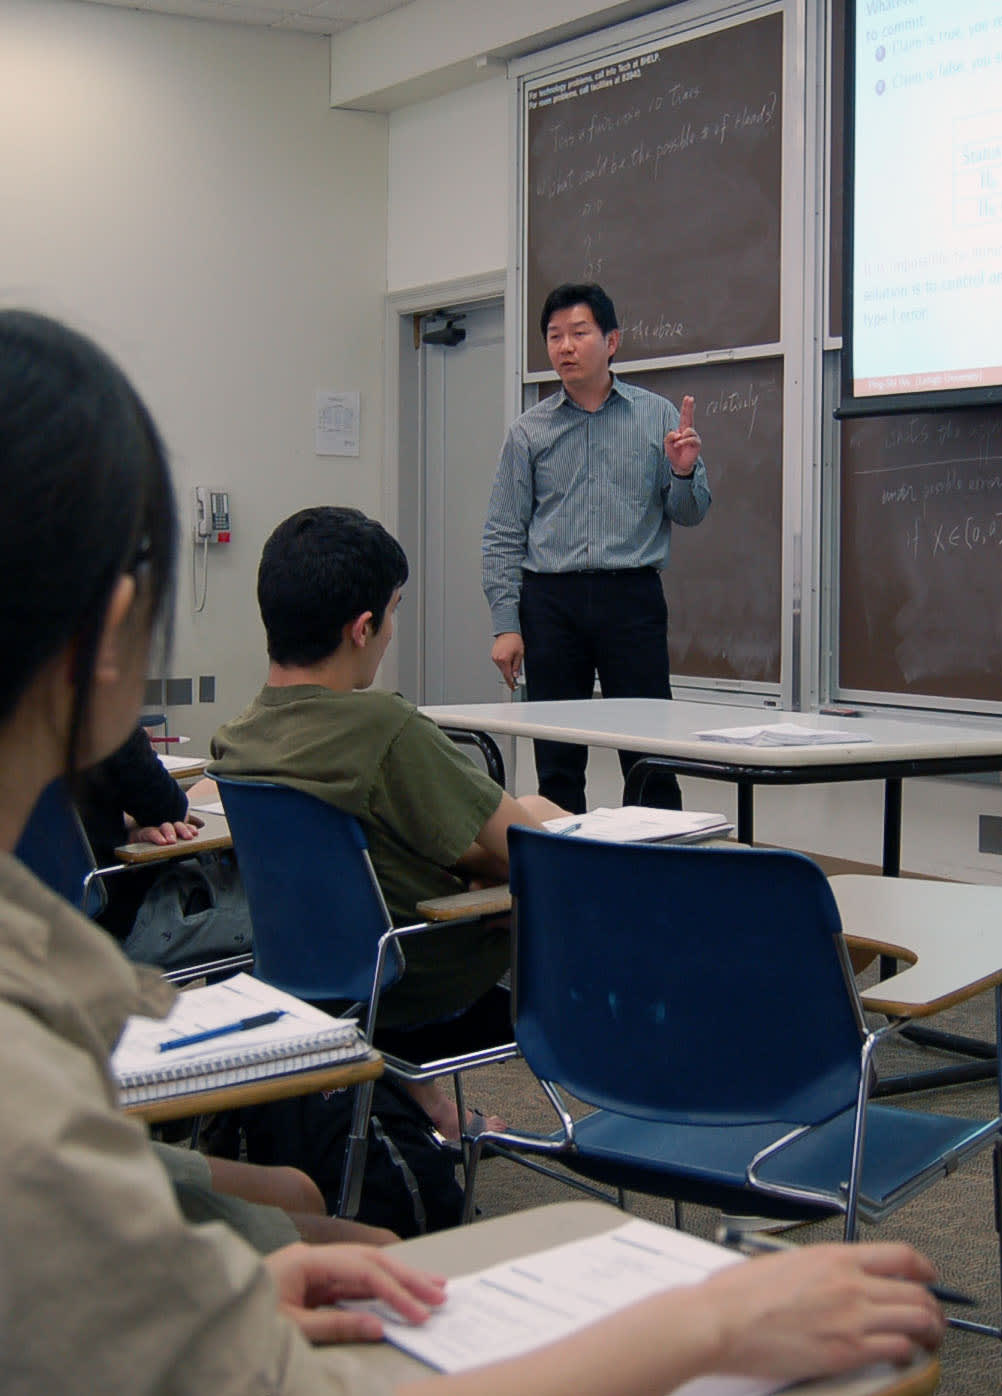 Ping Shi Wu, Lehigh University Mathematics